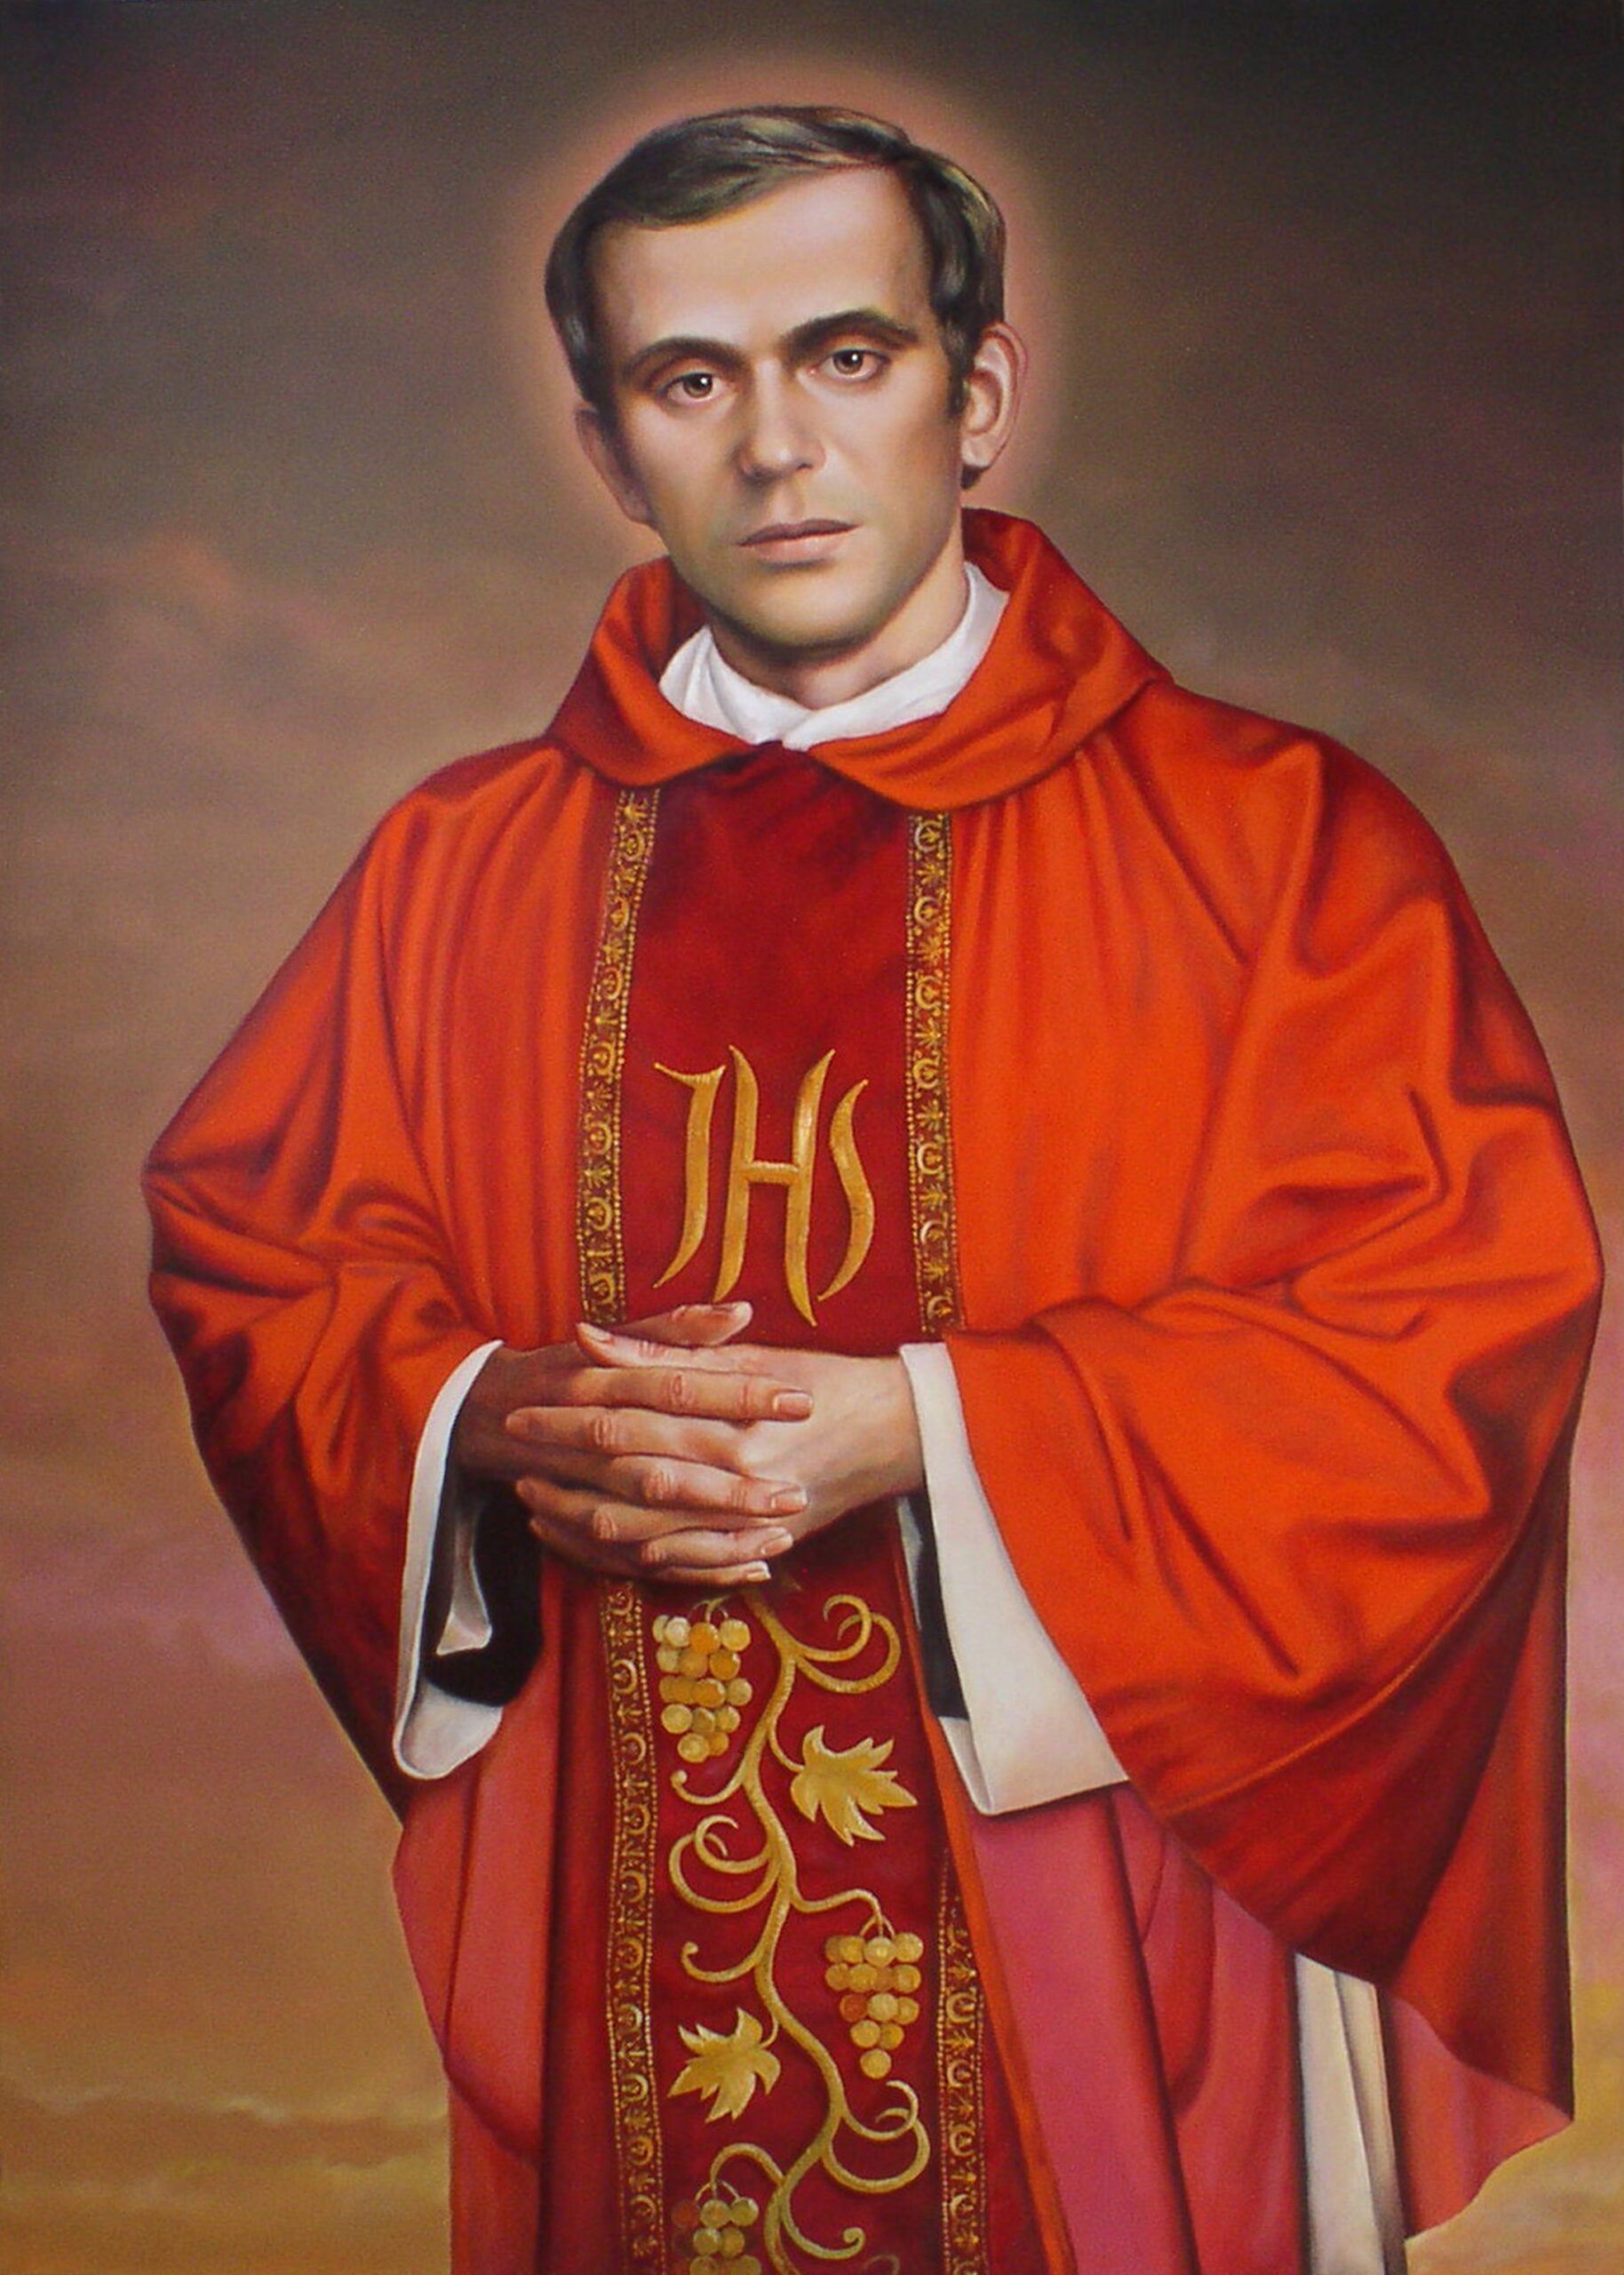 Na zdjęciu jest namalowany ksiądz Jerzy Popiełuszko w czerwonym ornacie